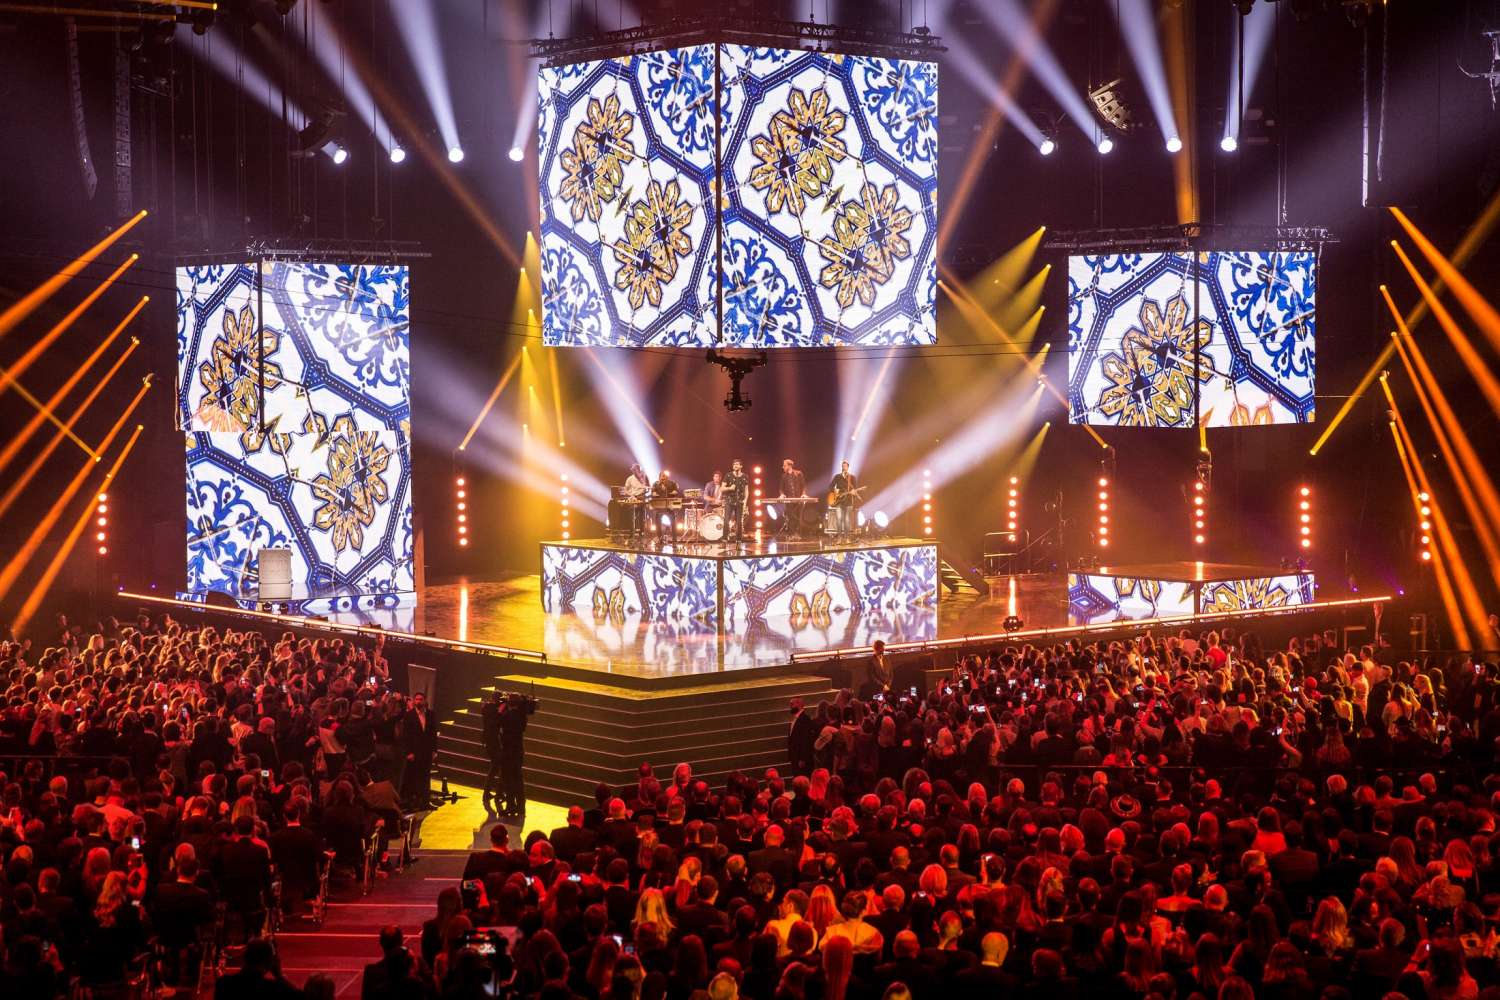 The awards show took place in Zurich’s Hallenstadion (photo: Bart-Heemskerk)